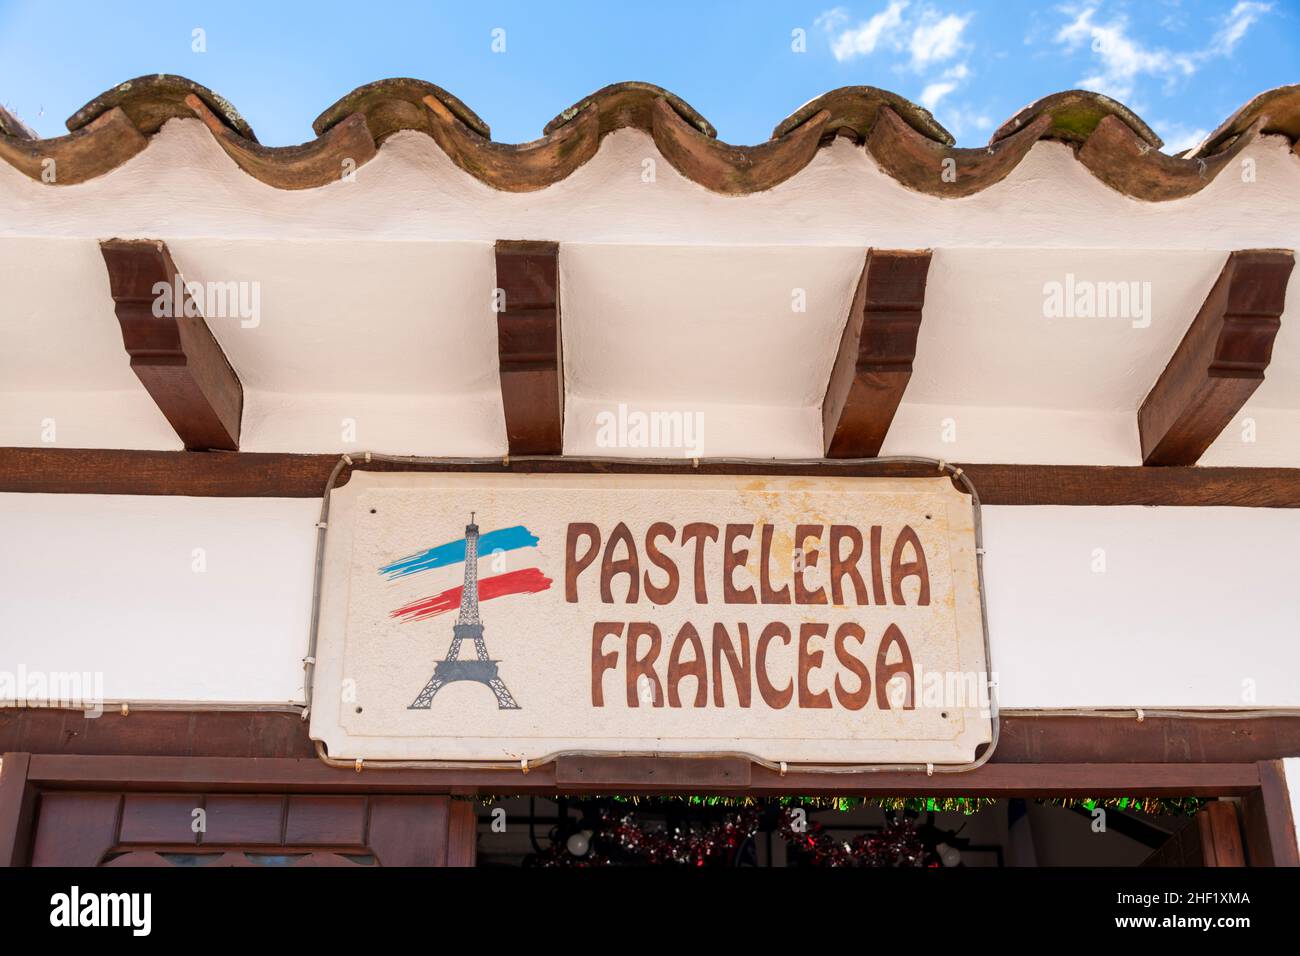 Le panneau Pasteleria Francesa, Villa de Leyva, Boyacá, Colombie Banque D'Images